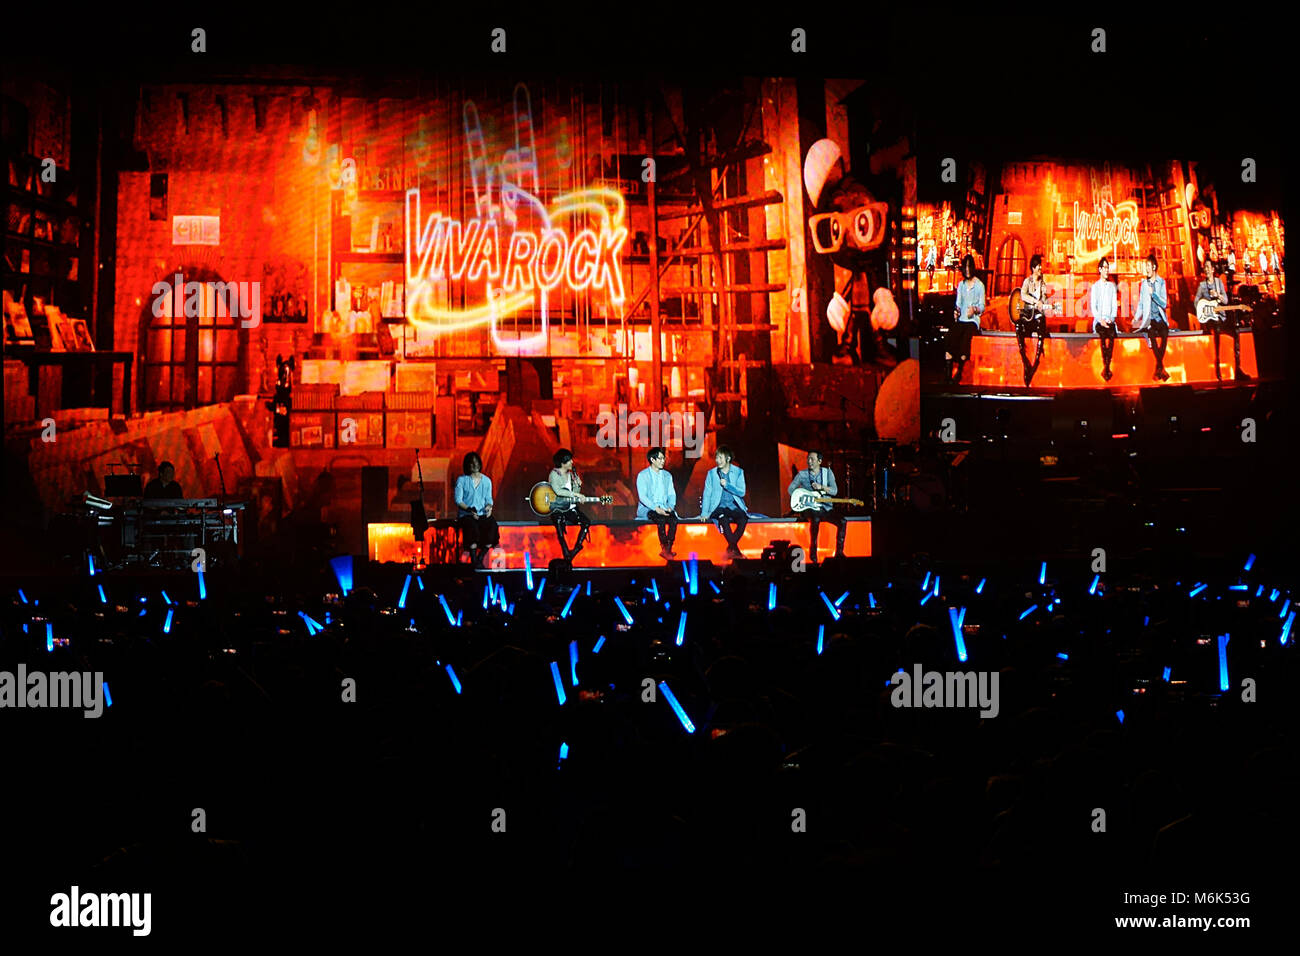 London, UK, 4. März, 2018. Mayday Konzert in der Londoner O2-Arena im Rahmen des Life World Tour. Credit: Calvin Tan/Alamy leben Nachrichten Stockfoto